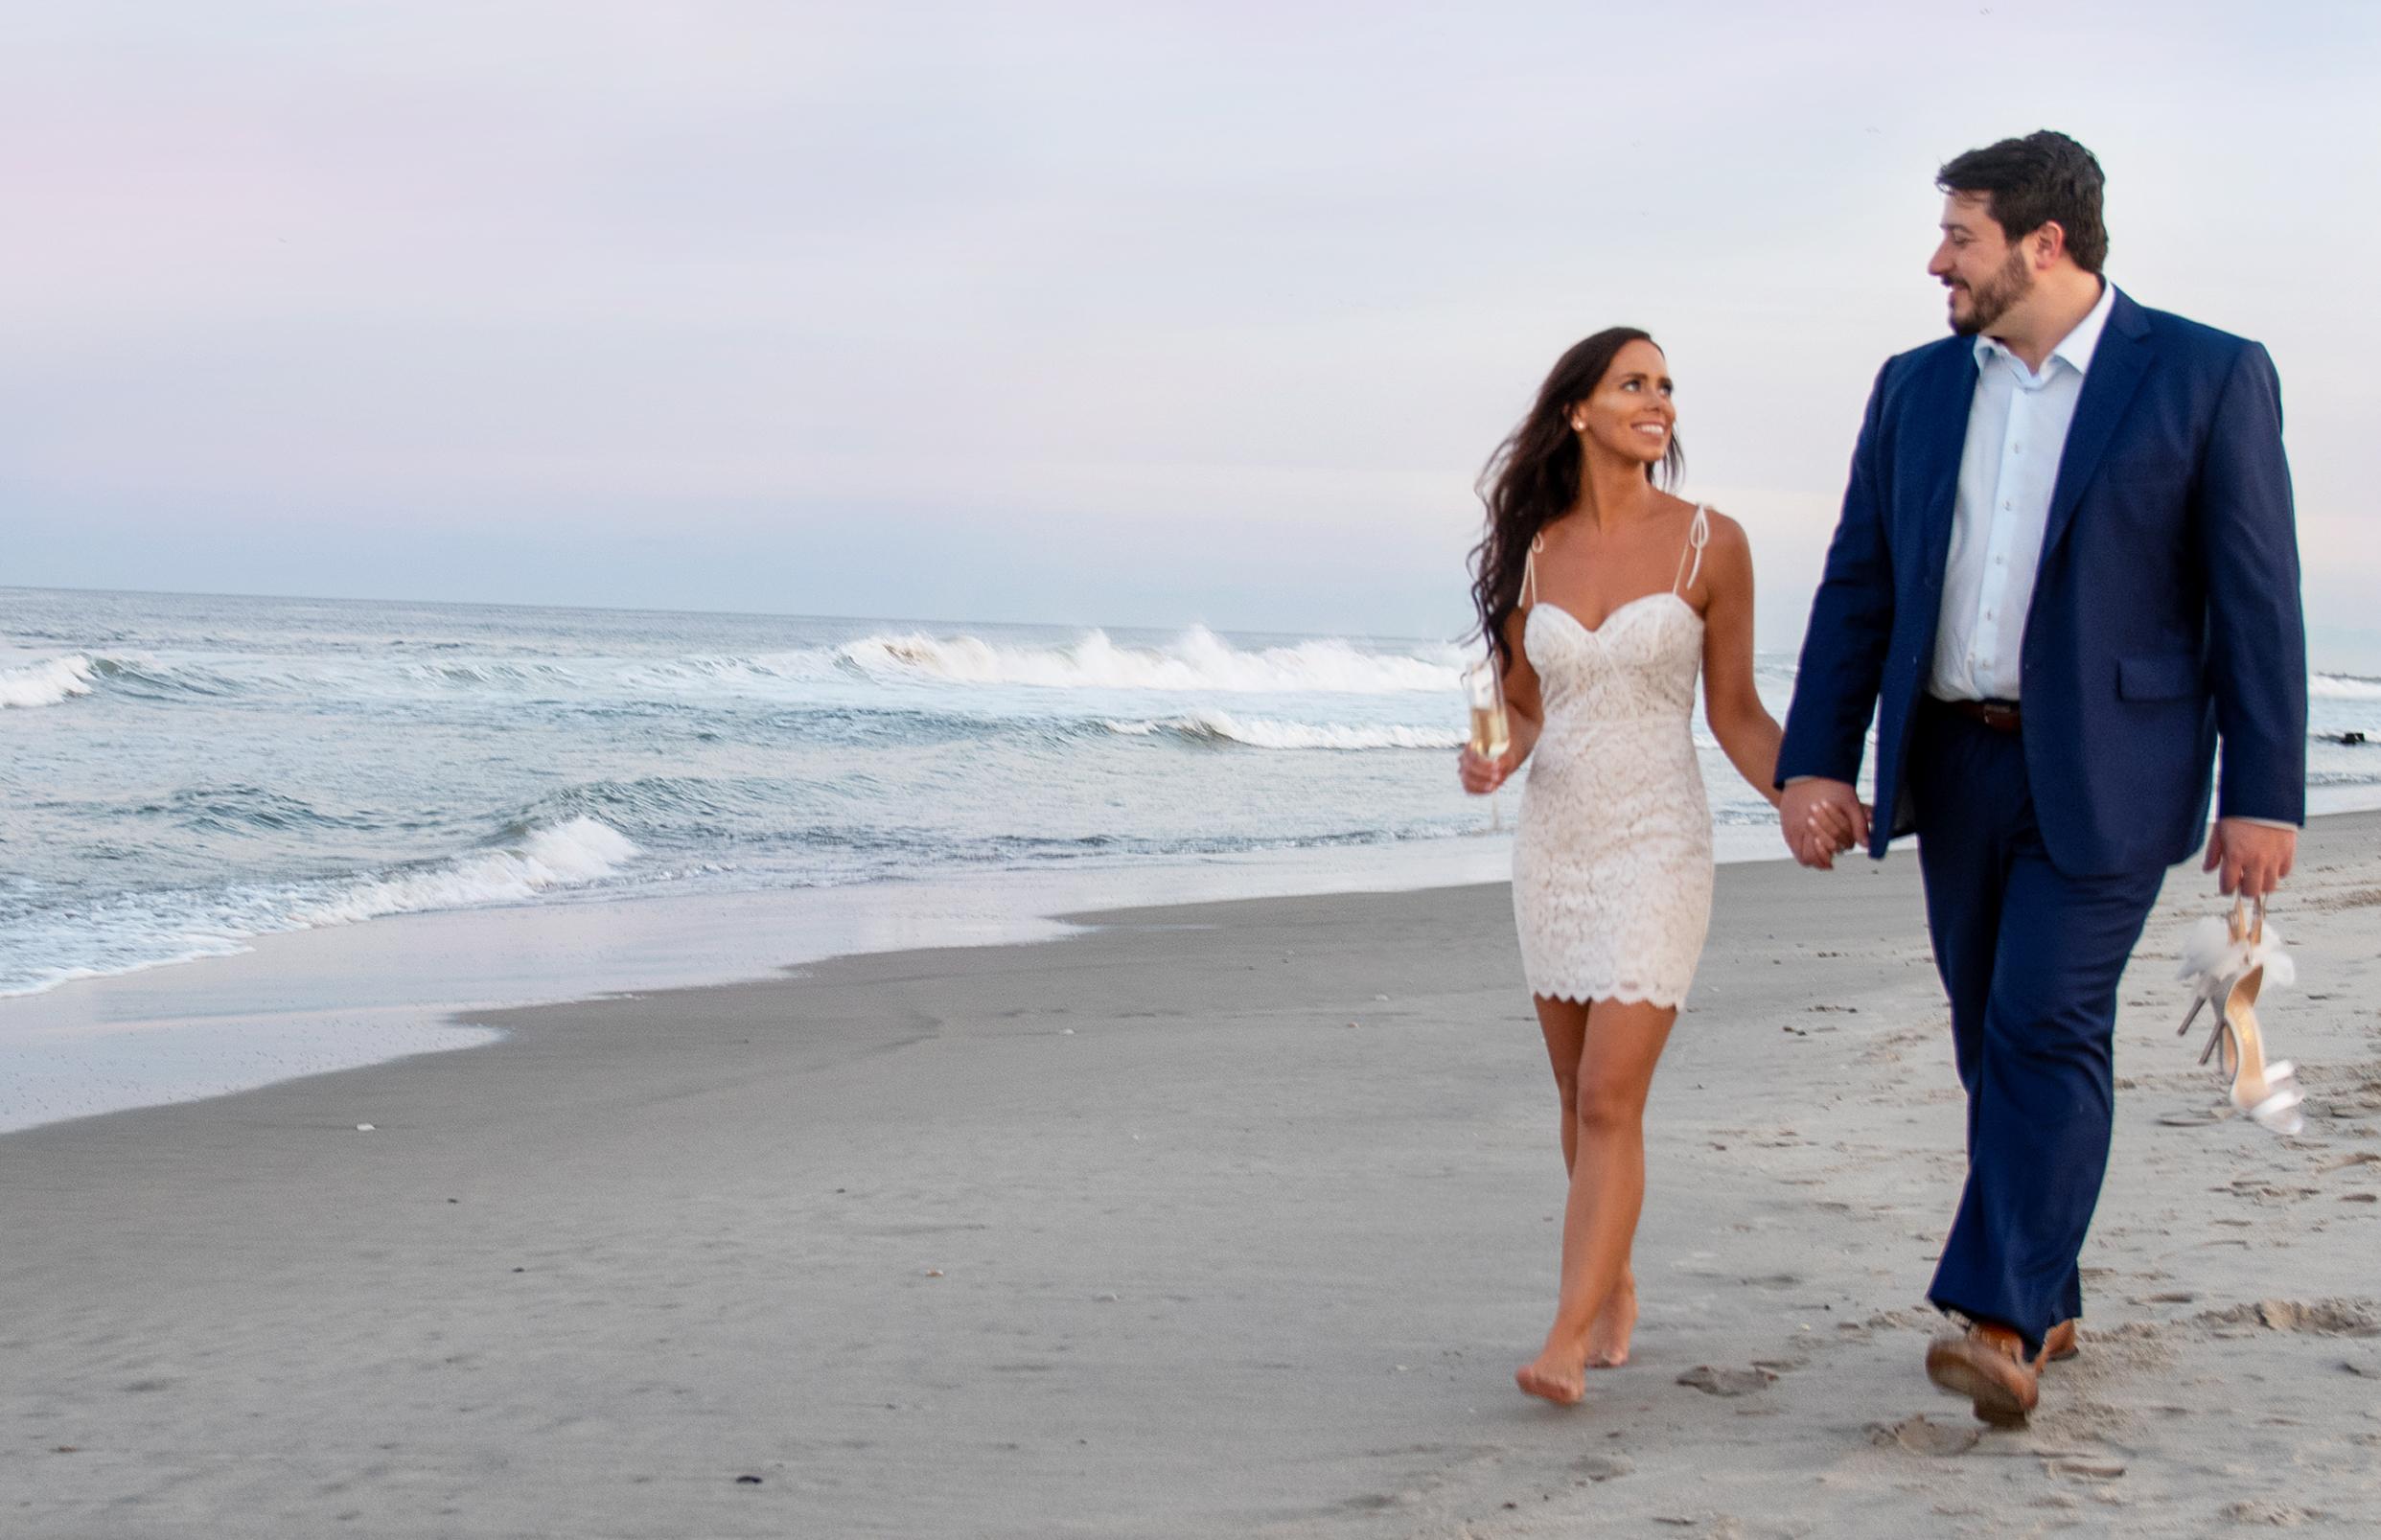 The Wedding Website of Erika Rinaldo and Todd Rinaldo